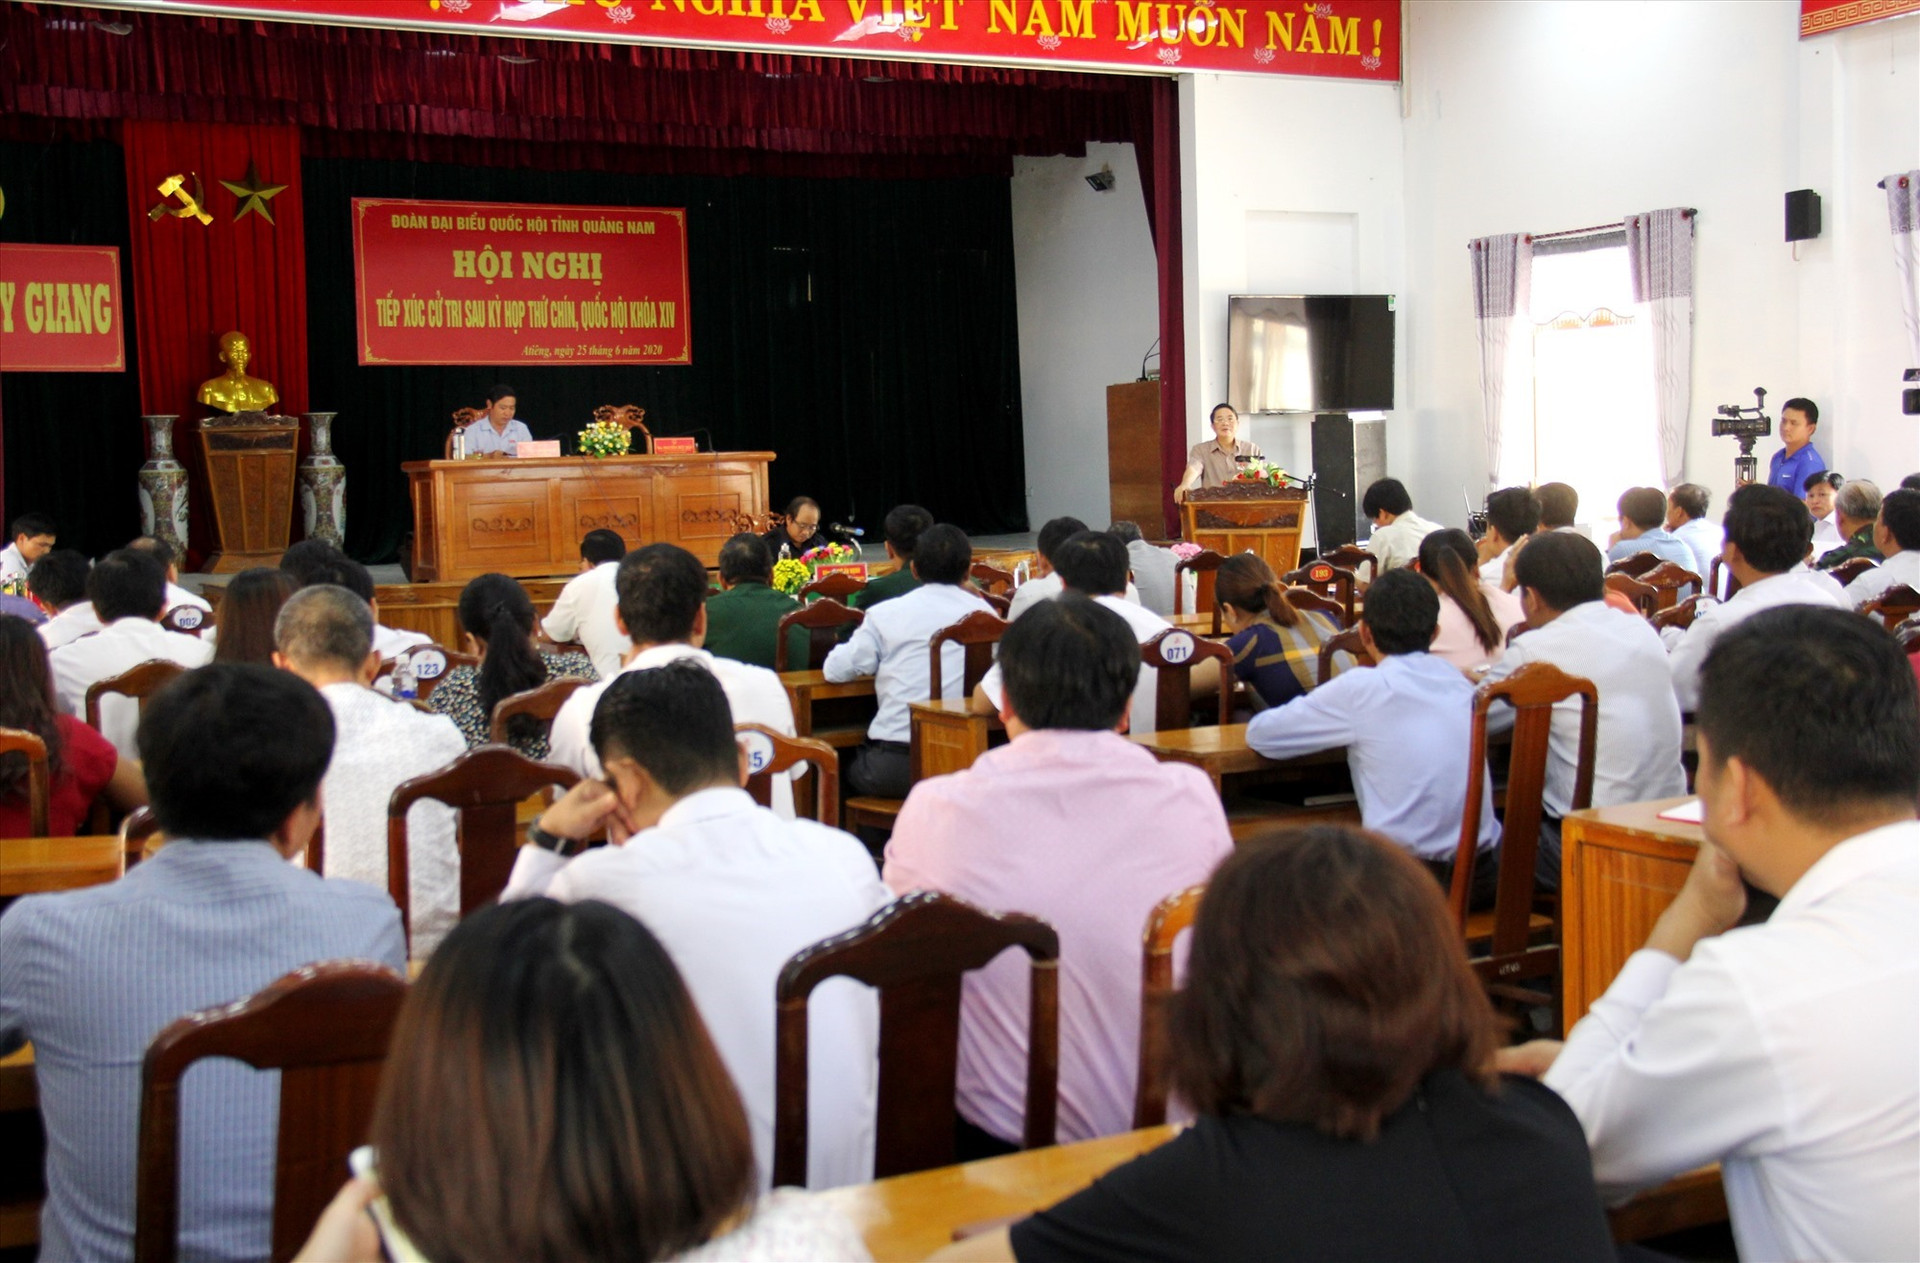 Đông đảo cử tri Tây Giang tham dự buổi tiếp xúc với ĐBQH. Ảnh: A.N